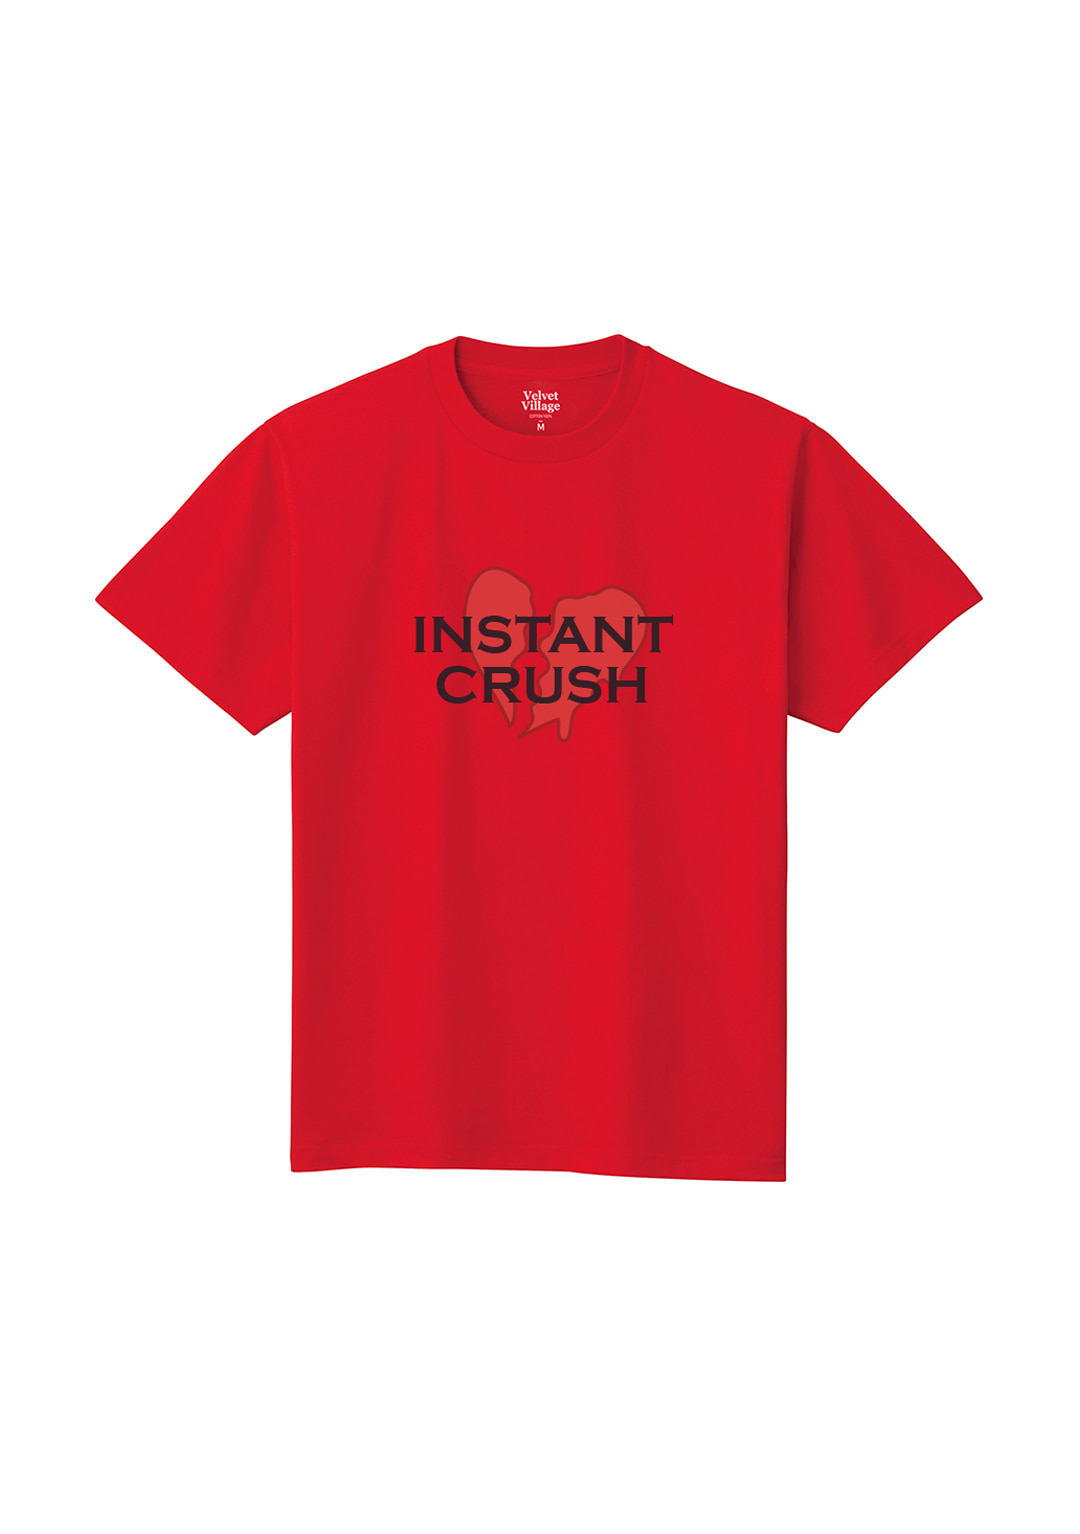 Instantcrush T-shirt (Red)